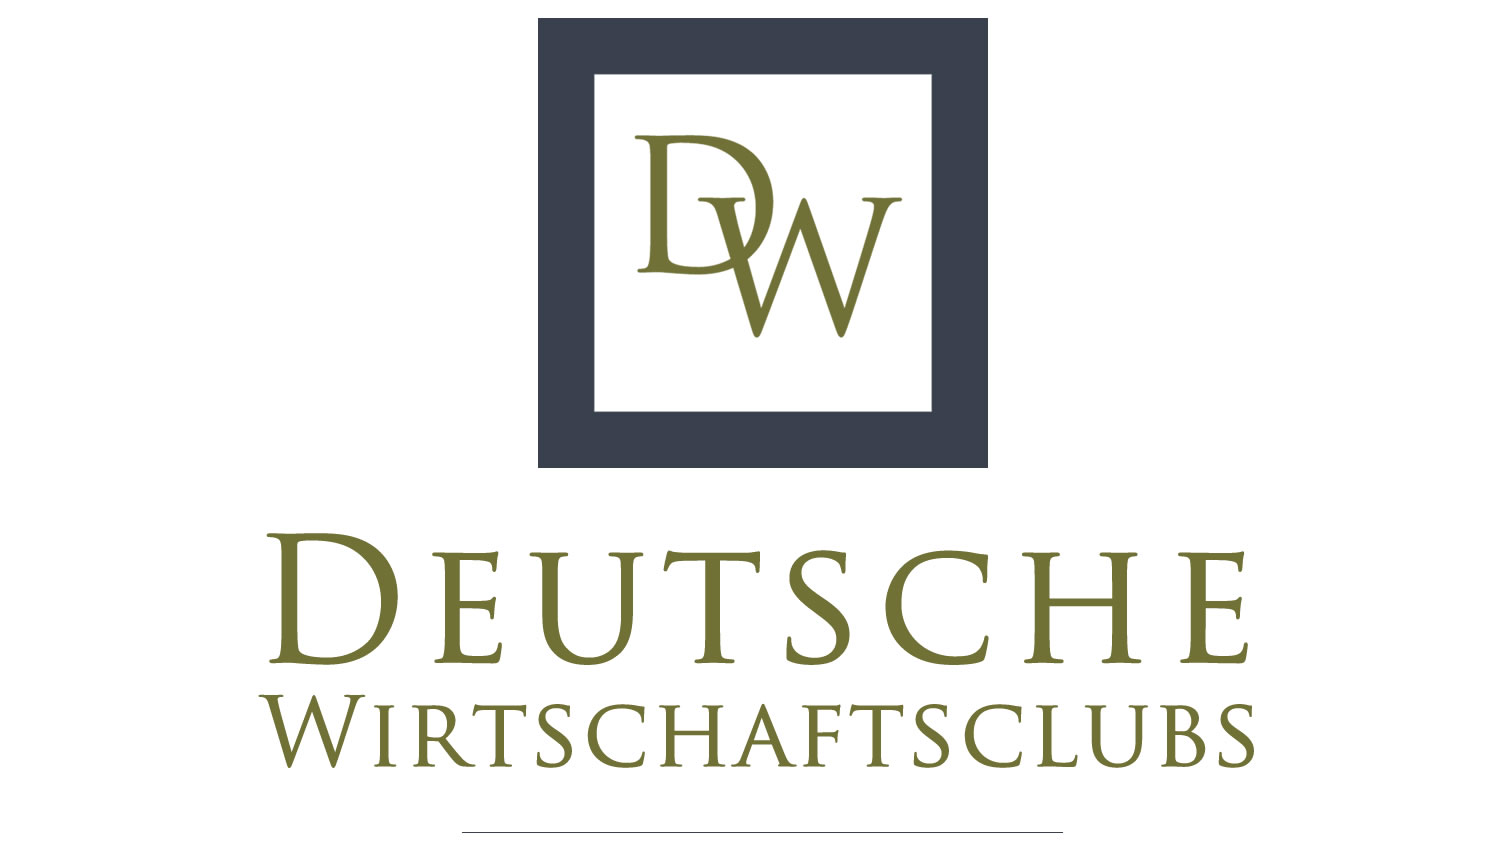 (c) Deutsche-wirtschaftsclubs.org